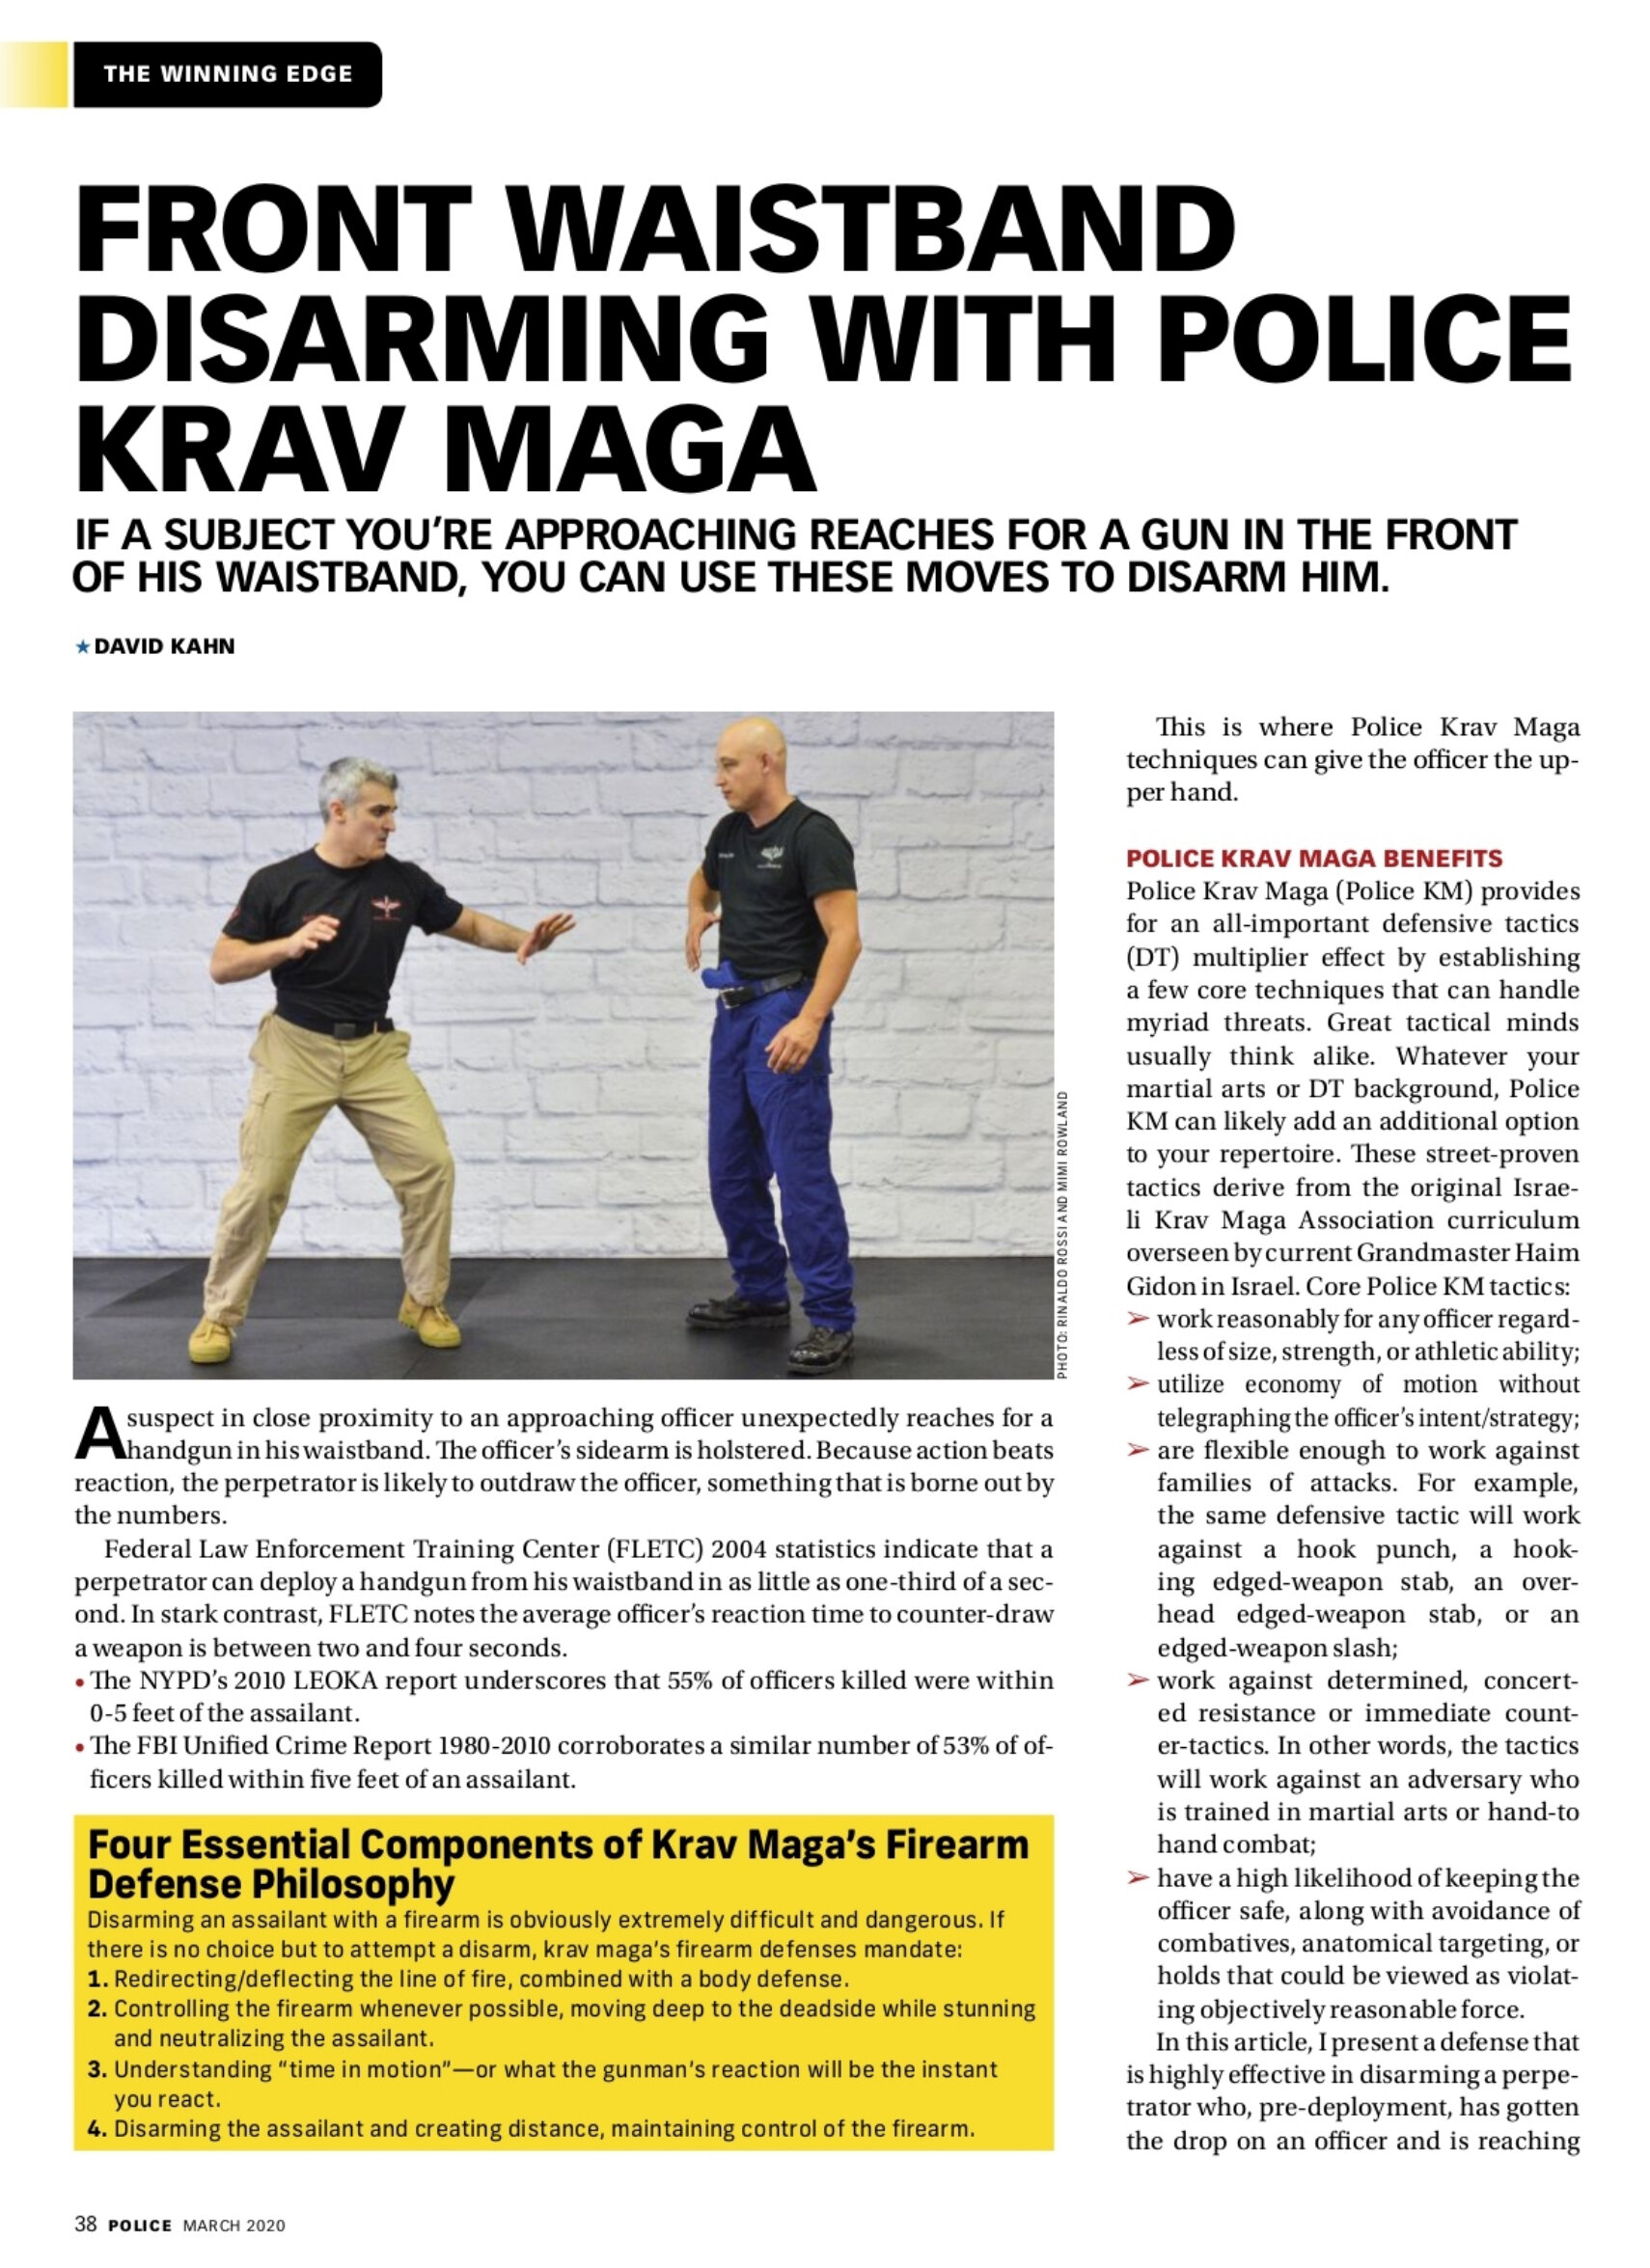 David_Kahn_Krav_Maga_Police_Magazine2.jpg